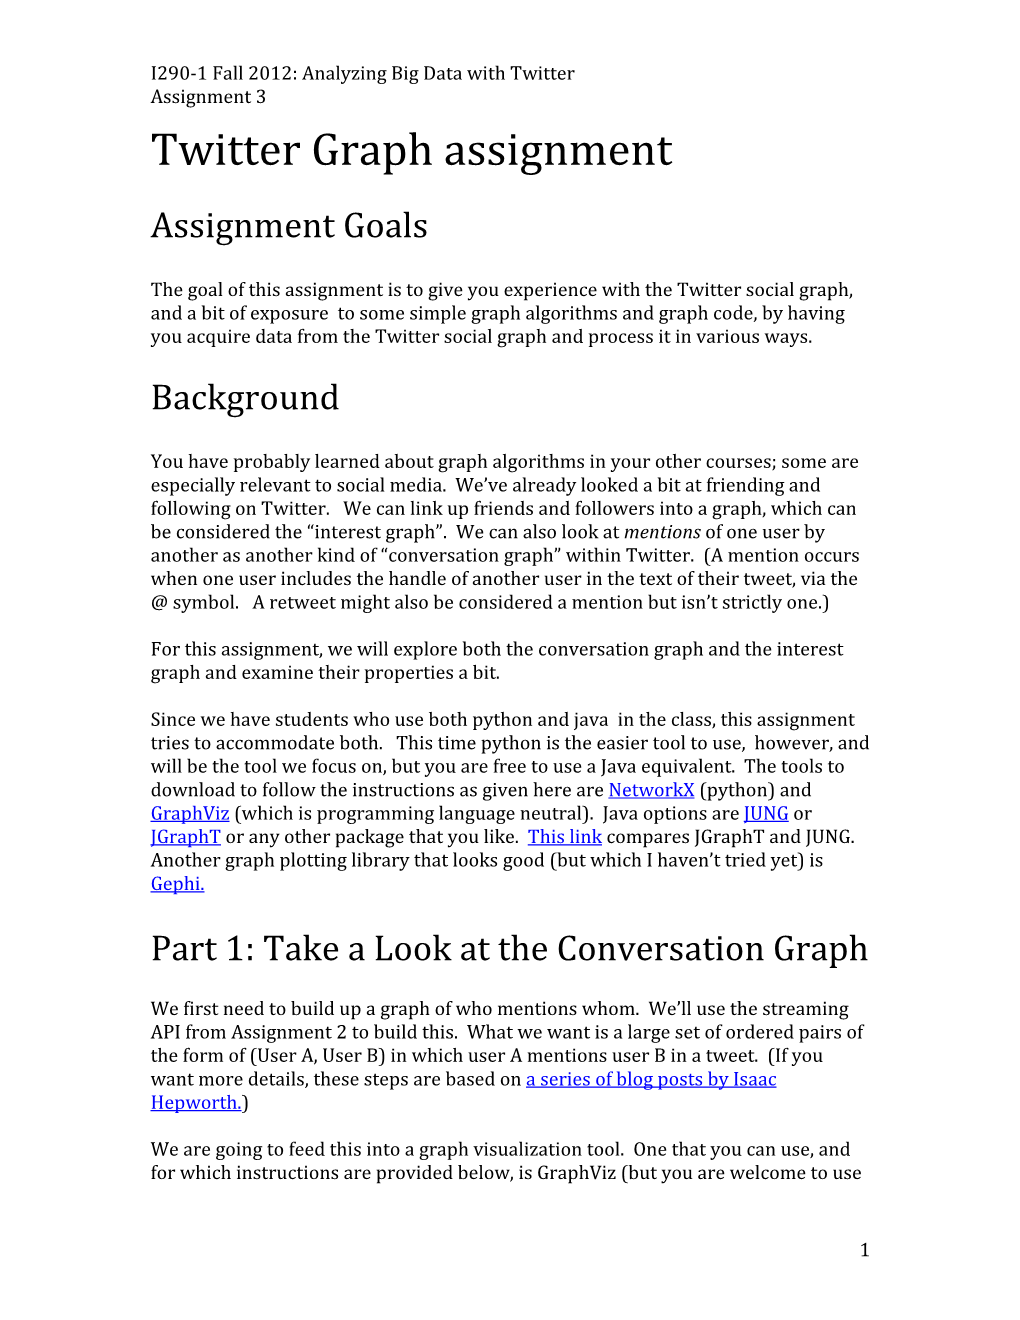 Twitter Graph Assignment